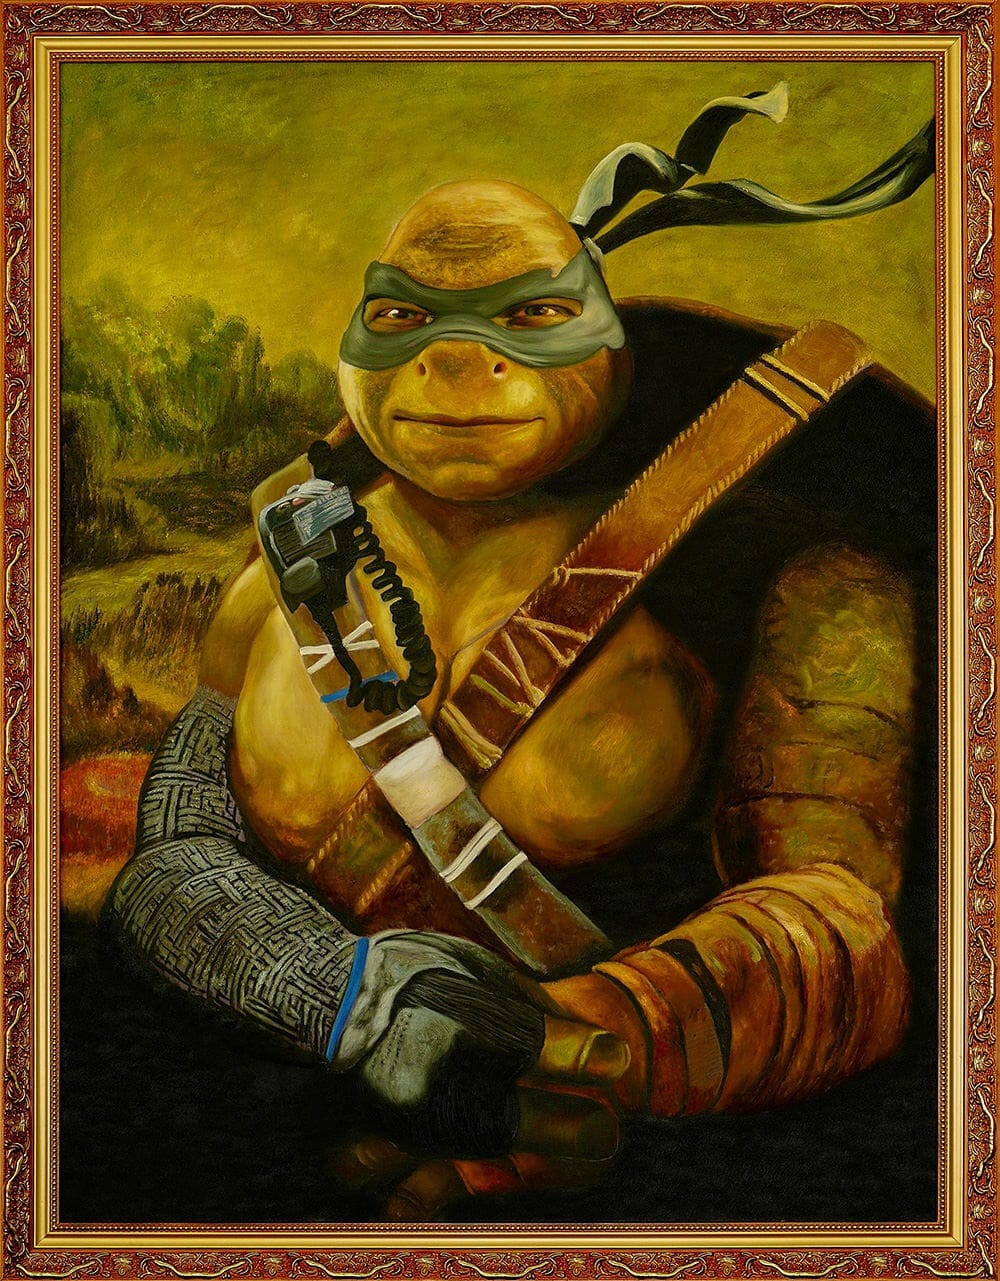 Donatello, Leonardo, Michelangelo e Rafael: artistas renascentistas ou  tartarugas ninja?